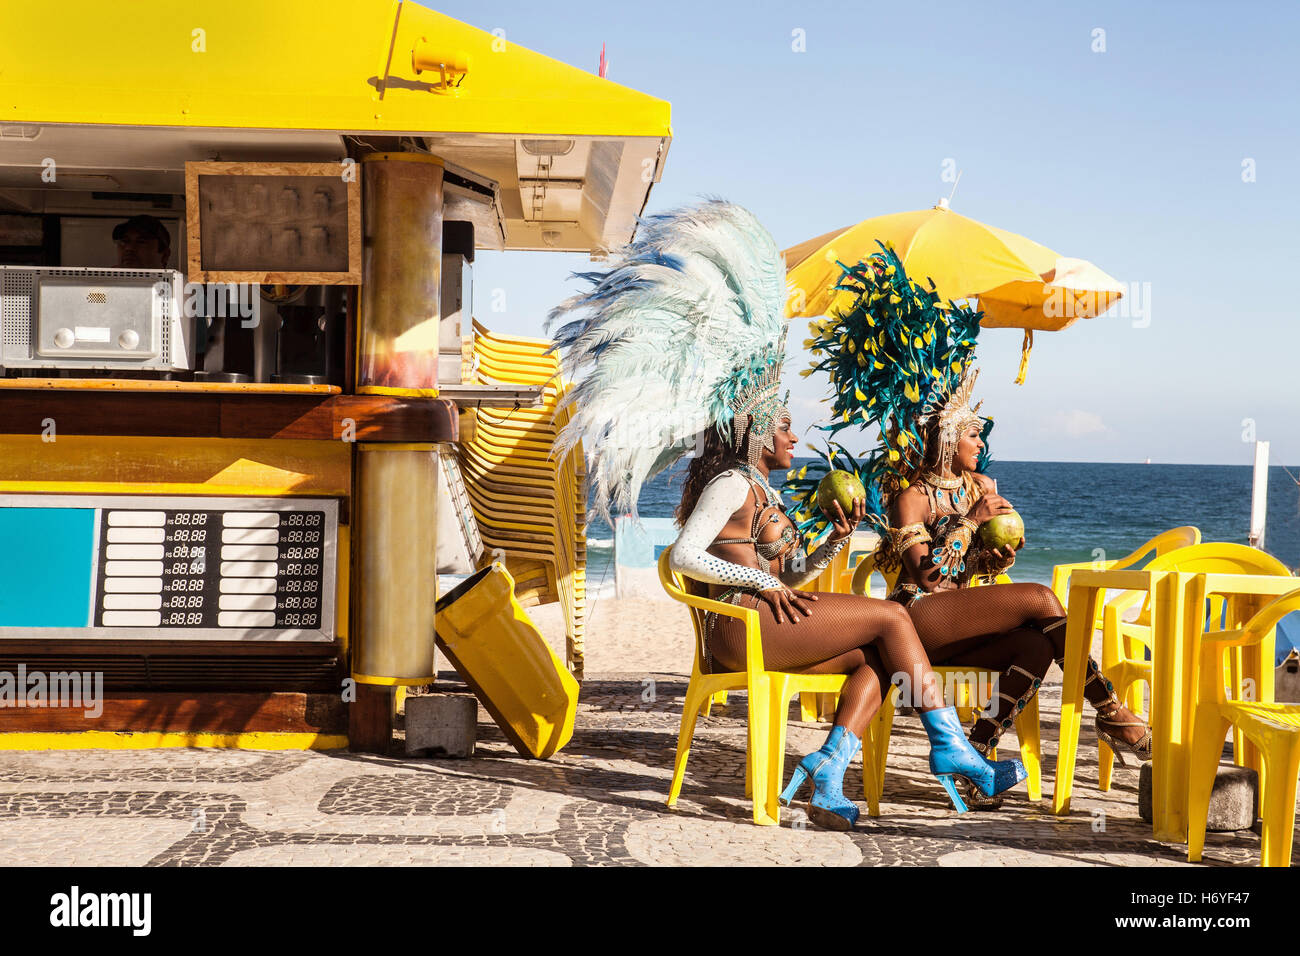 Les danseurs de samba en faisant une pause, la plage d'Ipanema, Rio de Janeiro, Brésil libre téléchargé par à 12:37 sur le 13/06/15 Banque D'Images